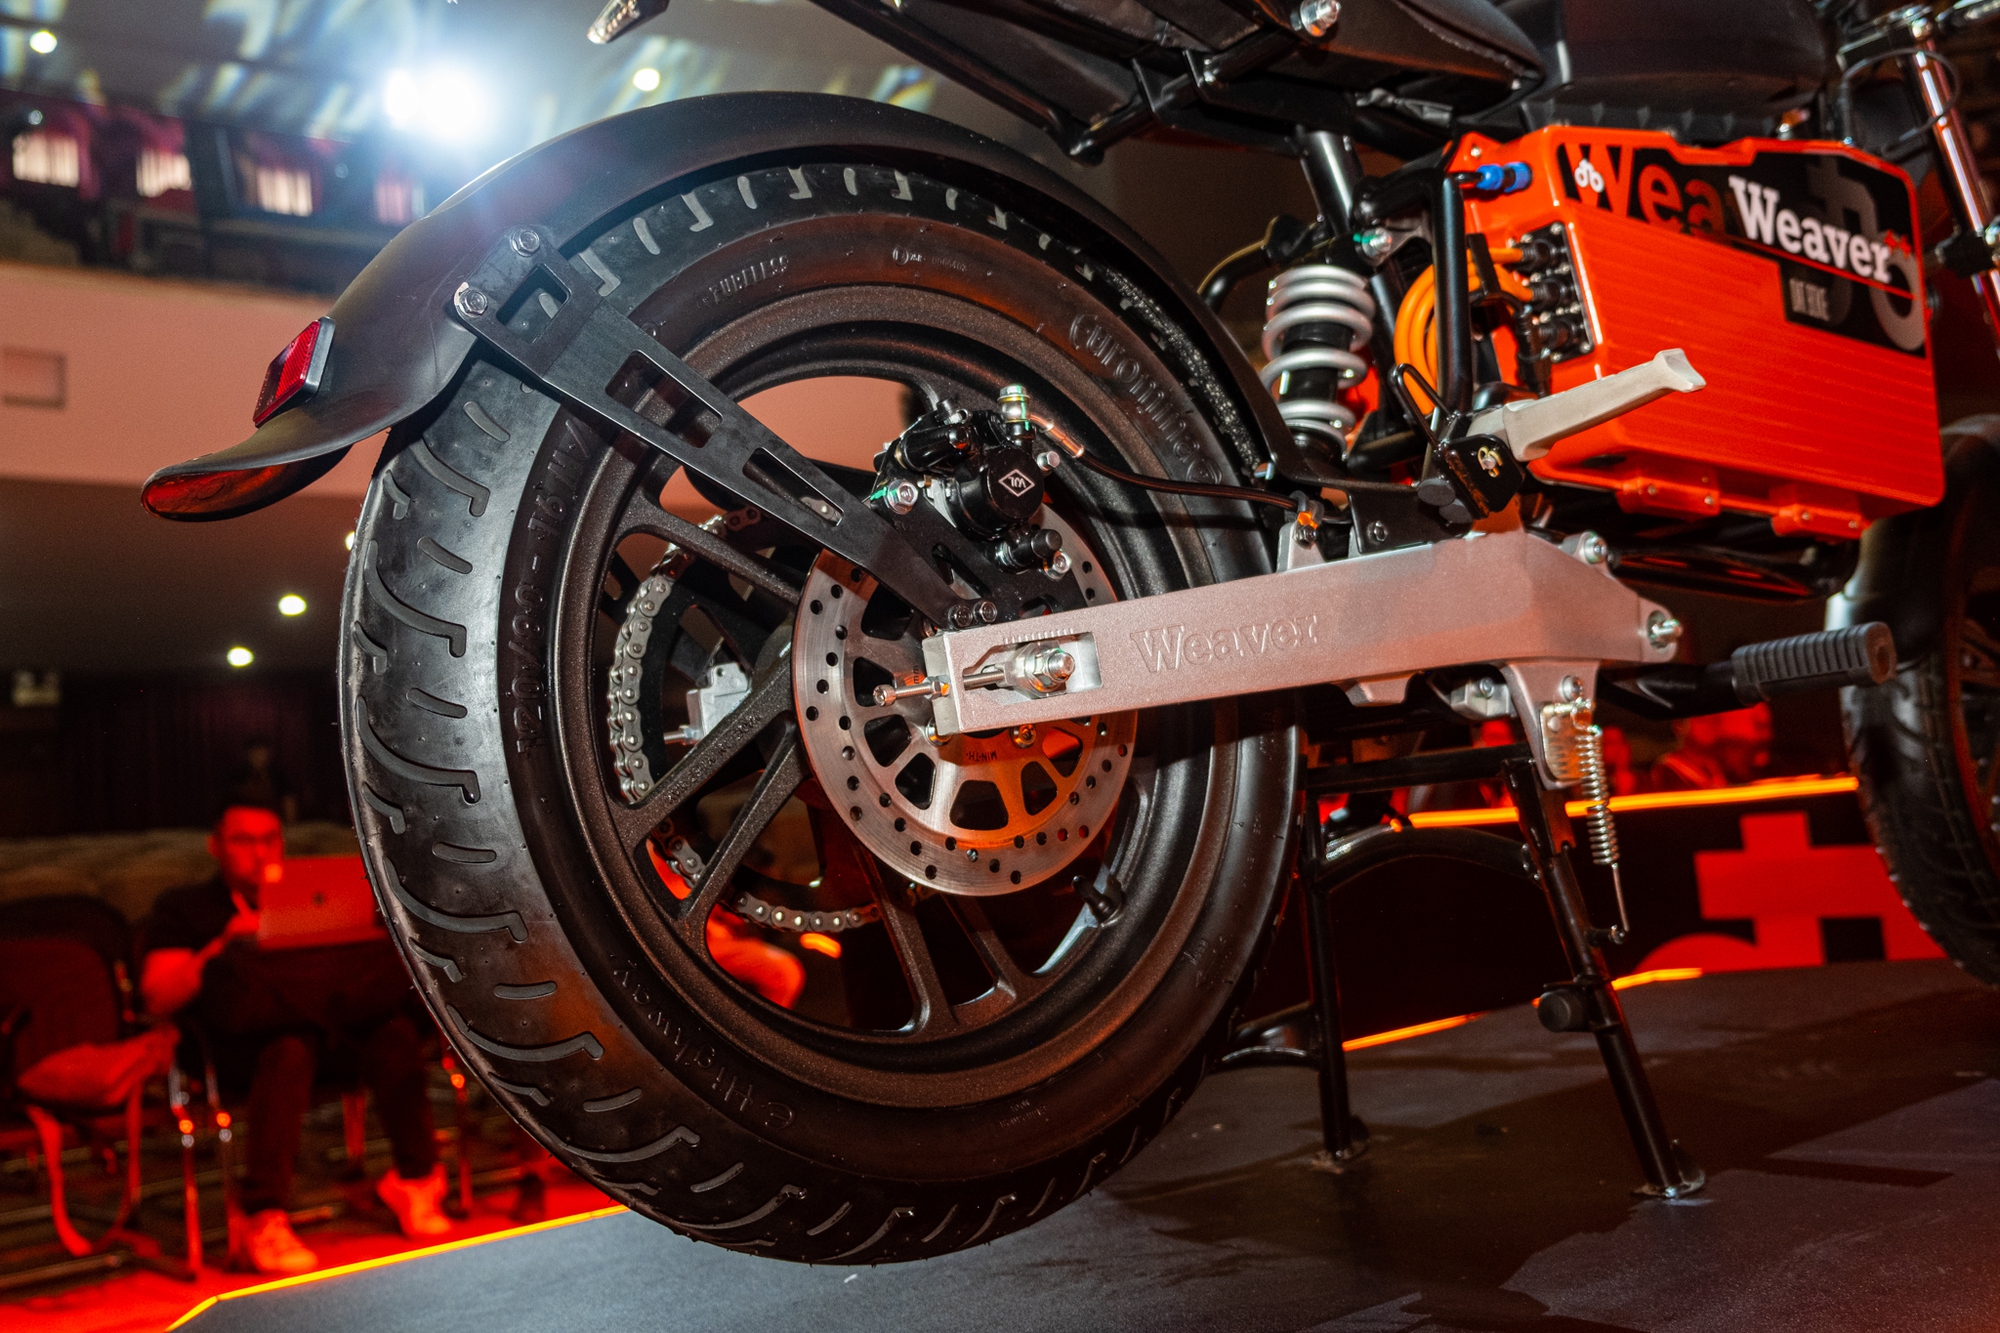 Ra mắt Dat Bike Weaver++: Giá 65,9 triệu đồng, dáng cổ điển, sạc nhanh chưa từng có tại Việt Nam - Ảnh 17.